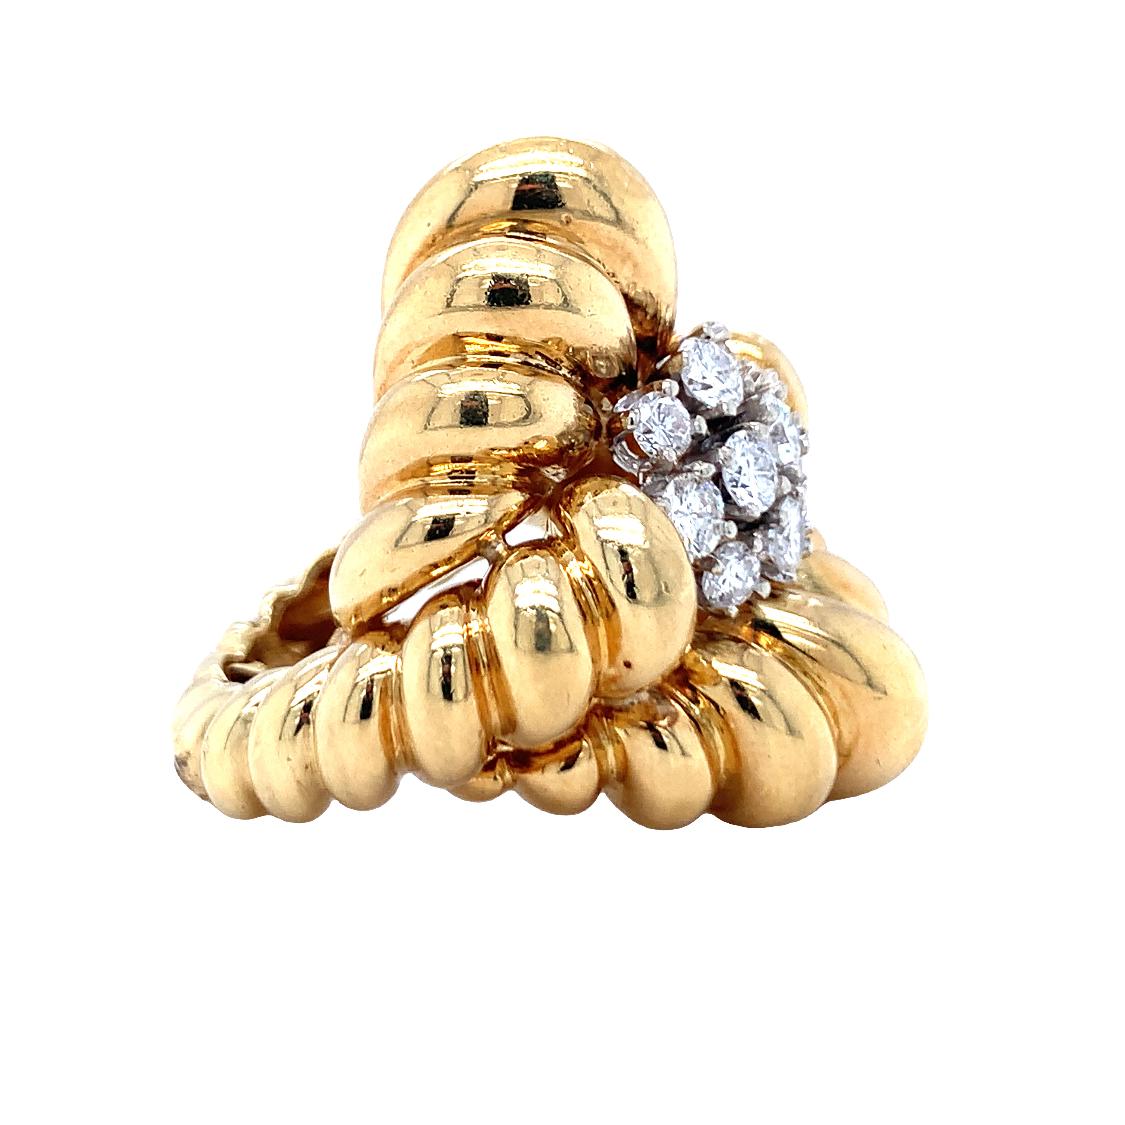 Ein Diamantring aus 18 Karat Gelbgold mit geriffeltem Golddesign und hochglanzpolierter Oberfläche mit zehn runden Diamanten im Brillantschliff mit einem Gewicht von 1,50 ct. mit der Farbe G und der Reinheit VS-2. Um 1960er.

Kräftig, glänzend,